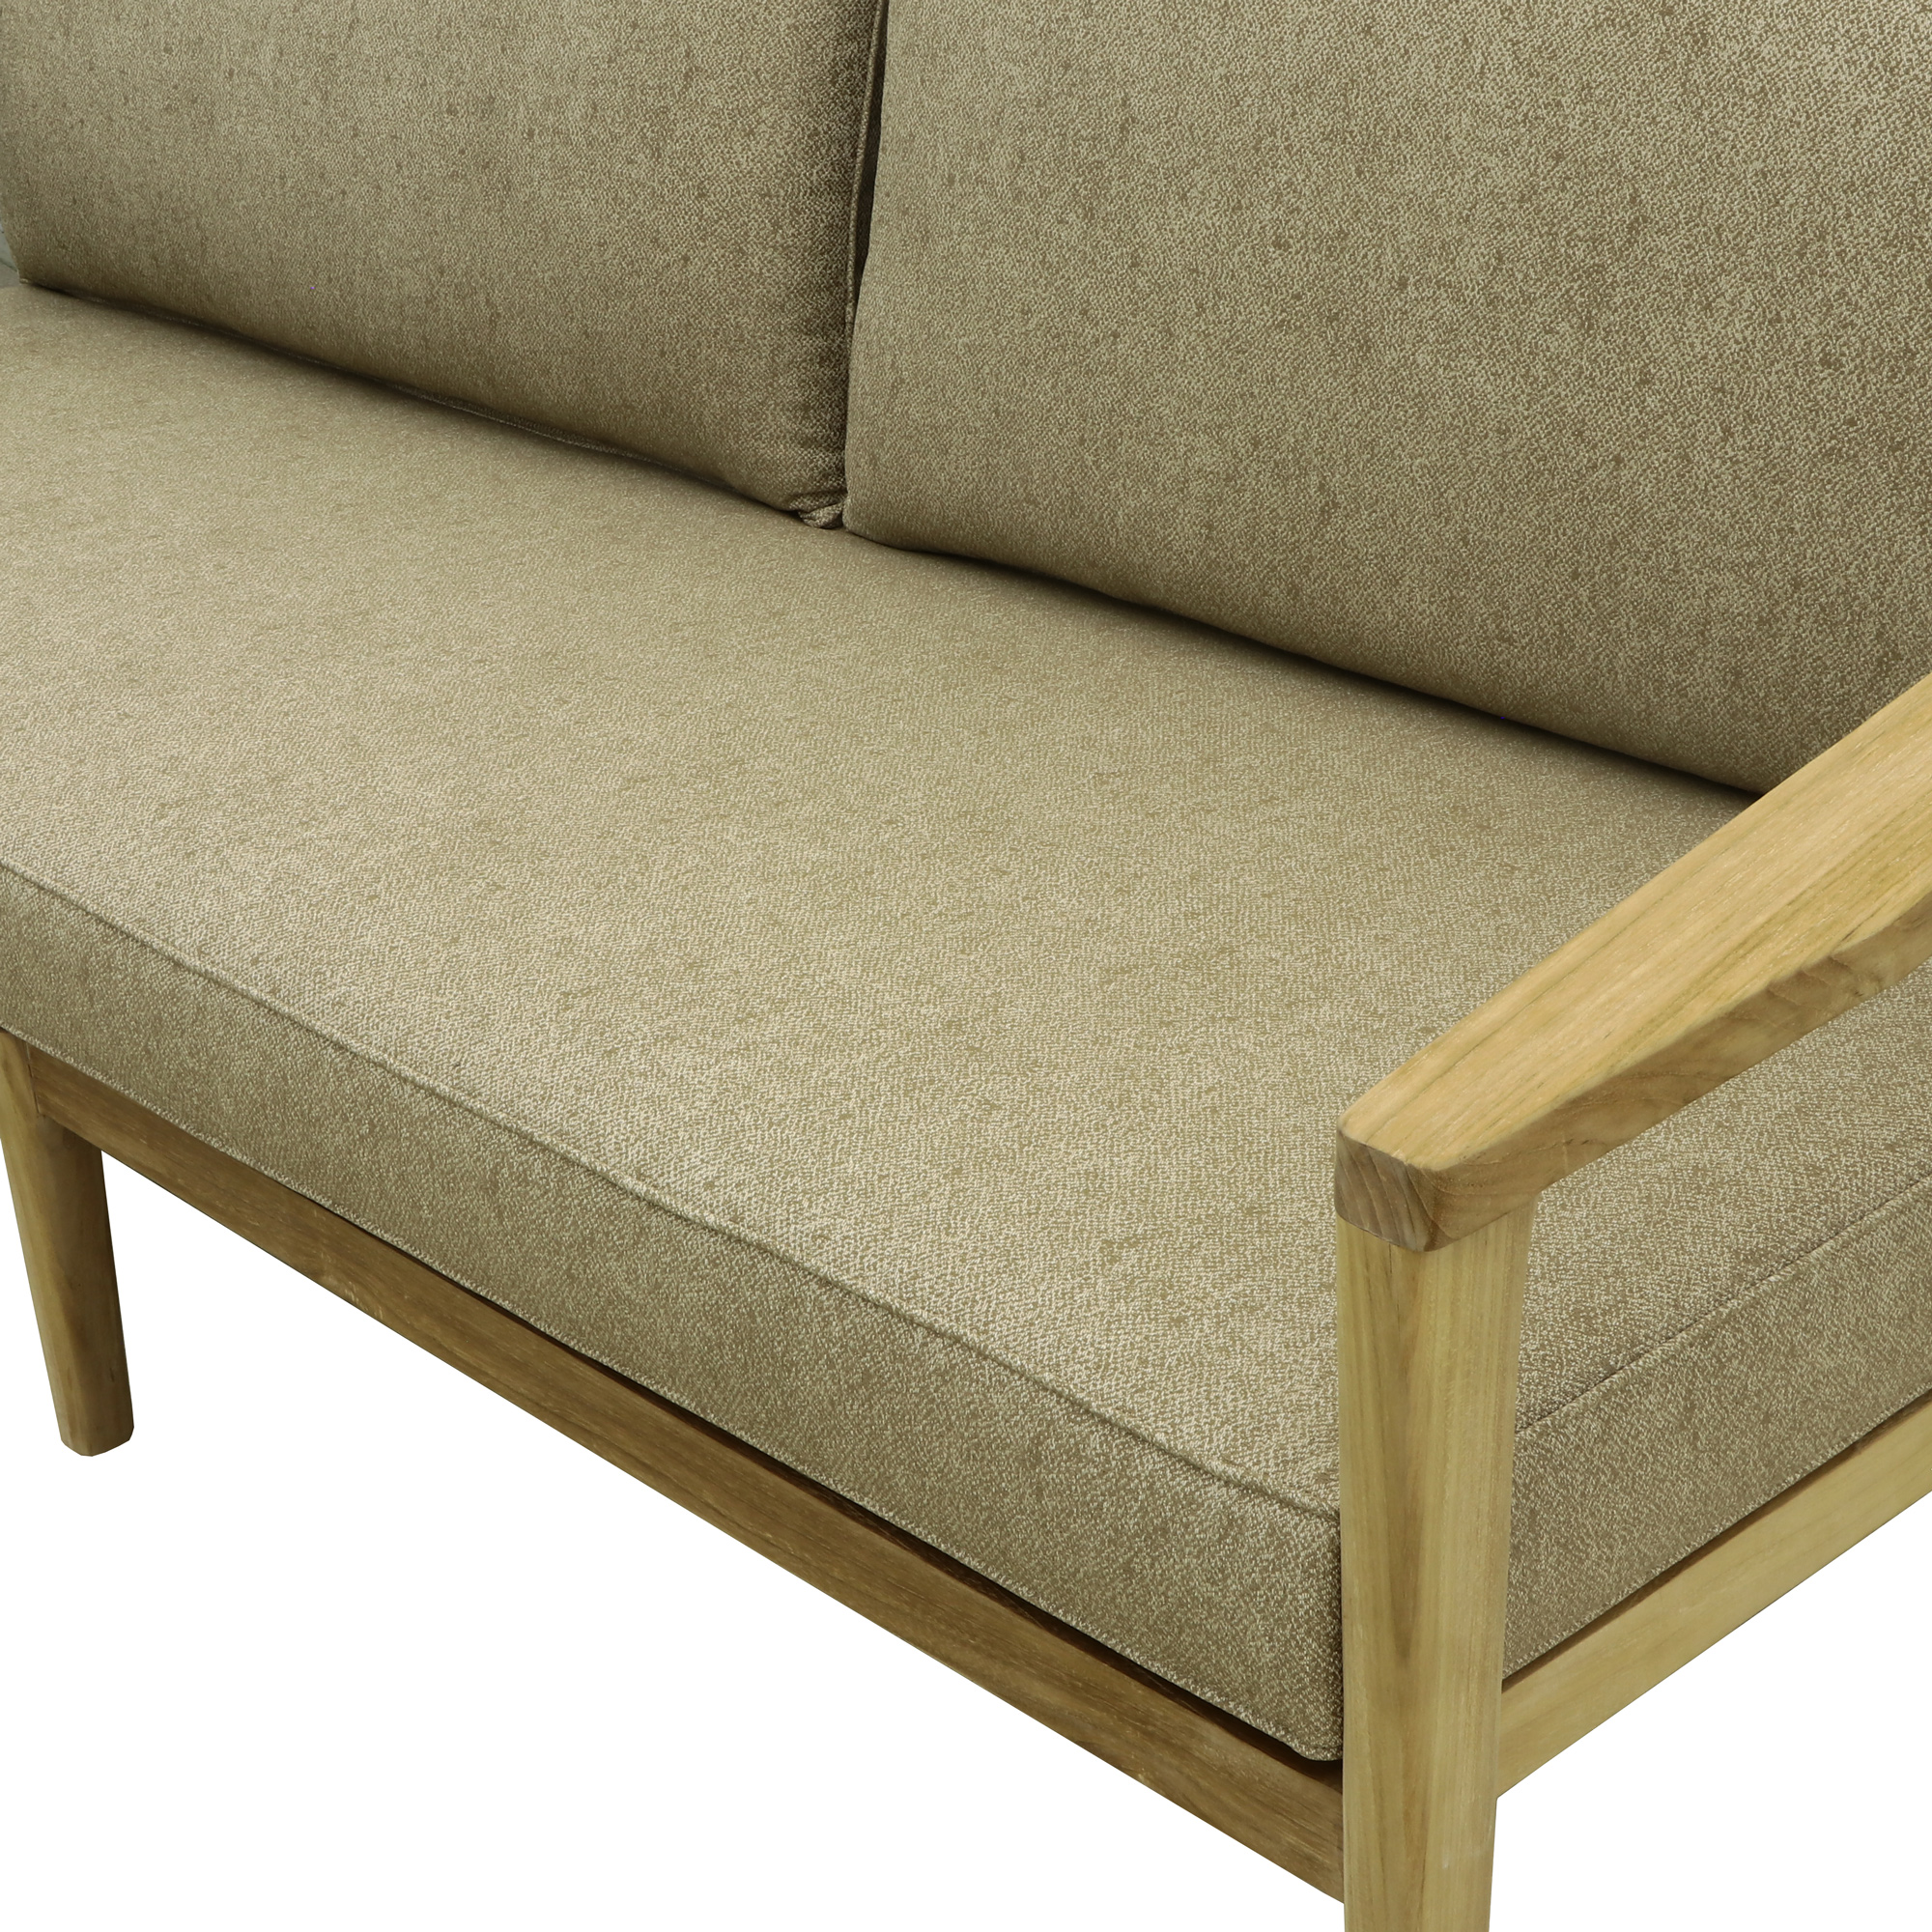 Комплект мебели Jepara Porto Cervo l 6 предметов, цвет коричневый, размер 82х210х85 - фото 8